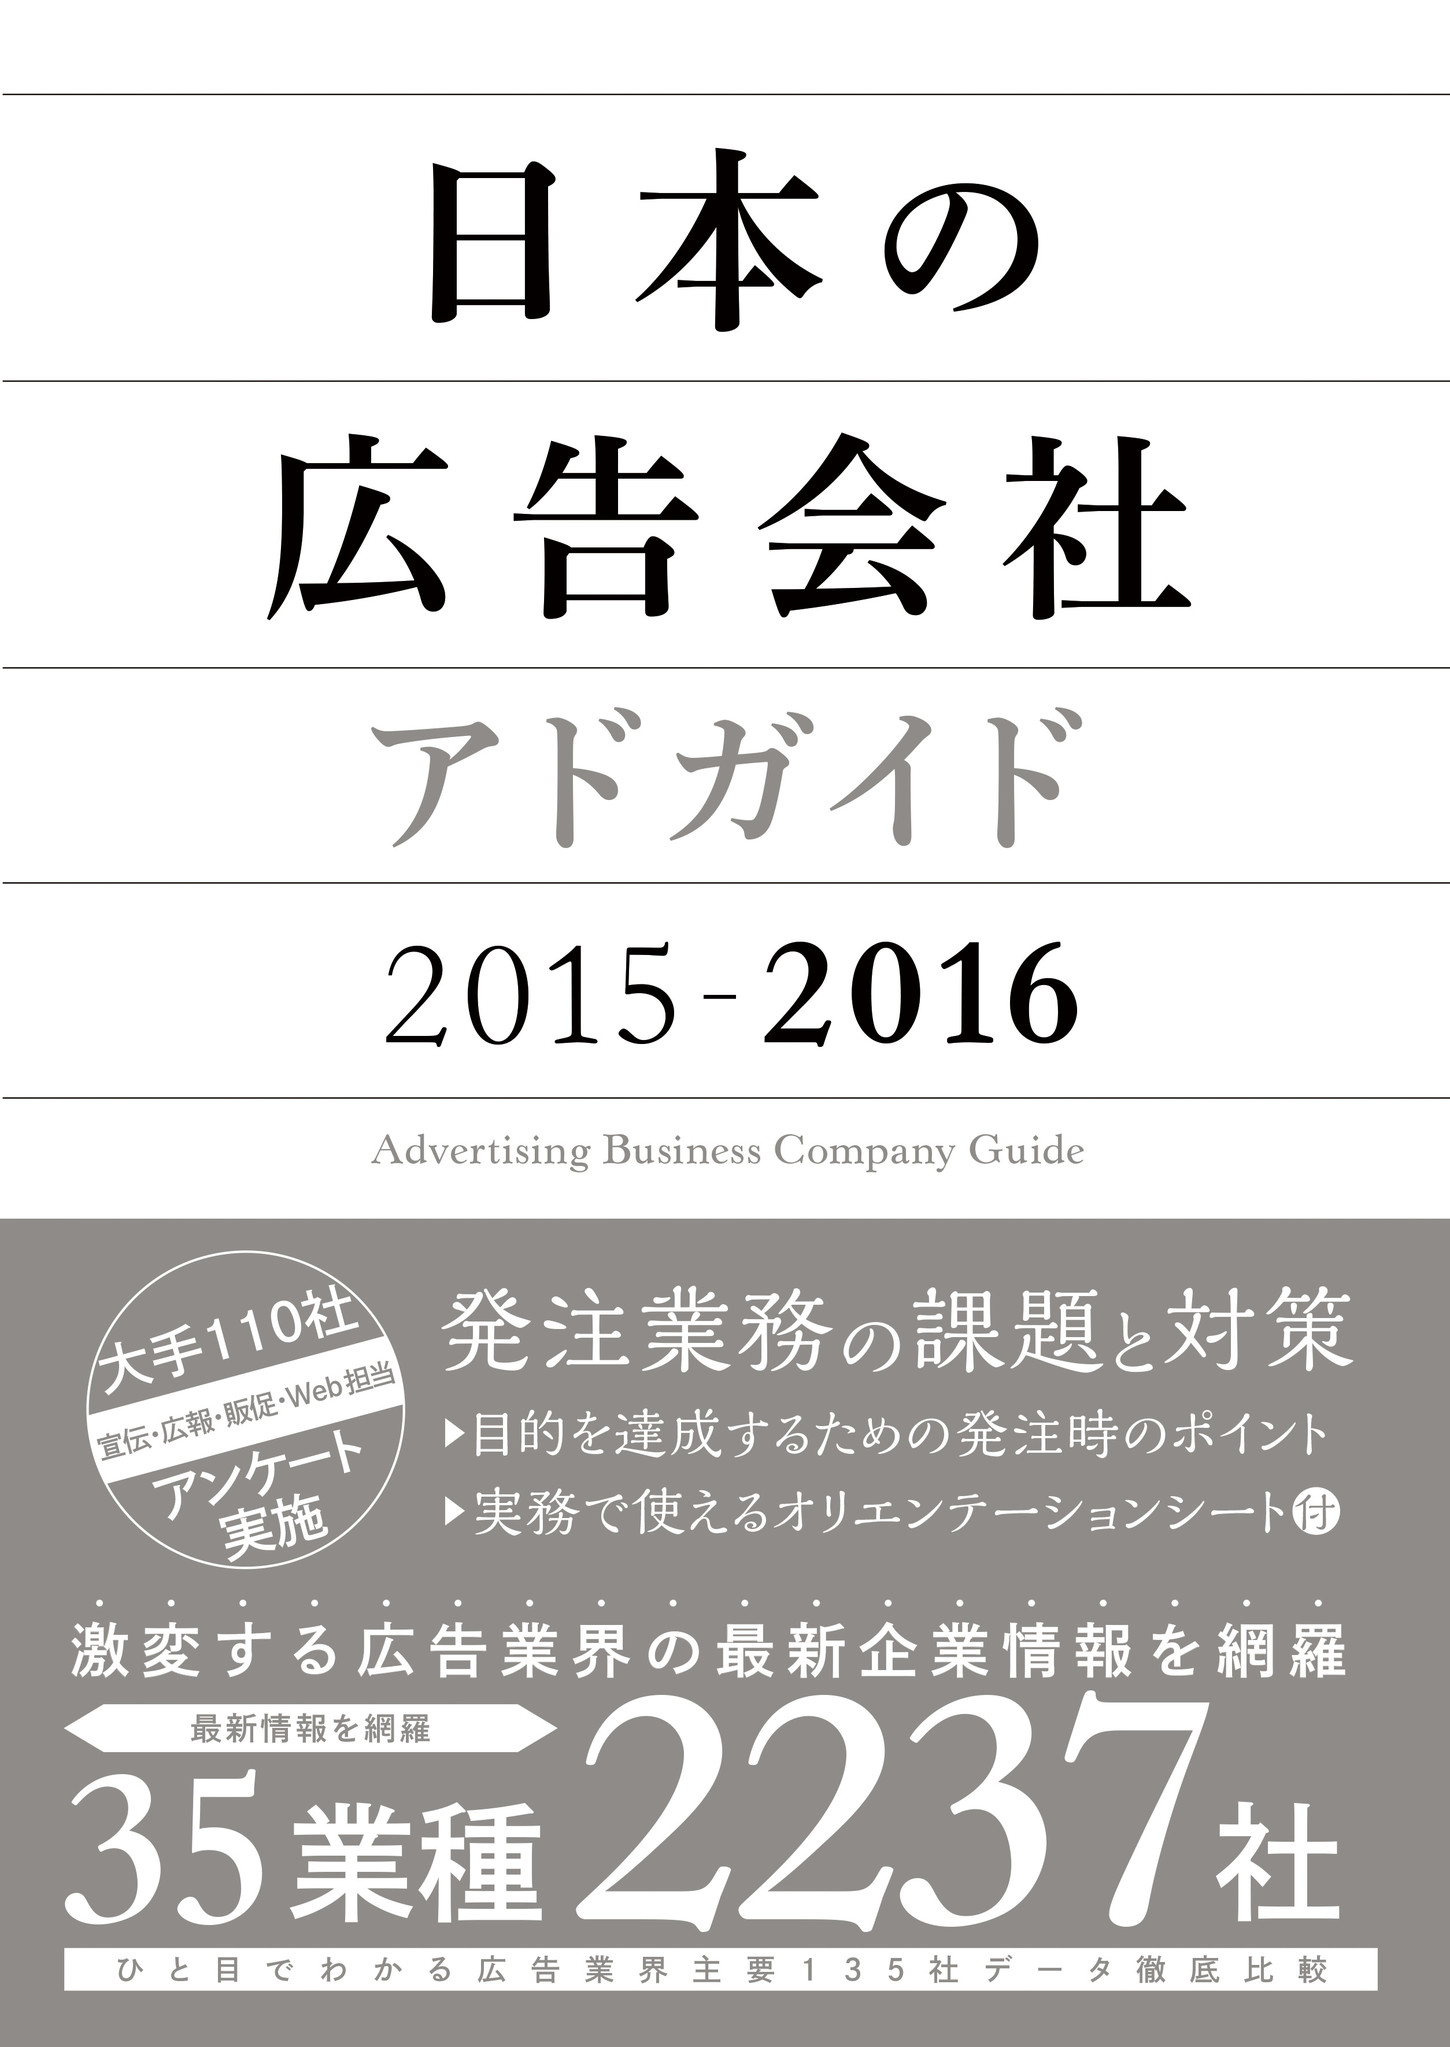 『日本の広告会社(アドガイド)2015-2016』発売 新刊書籍のご案内